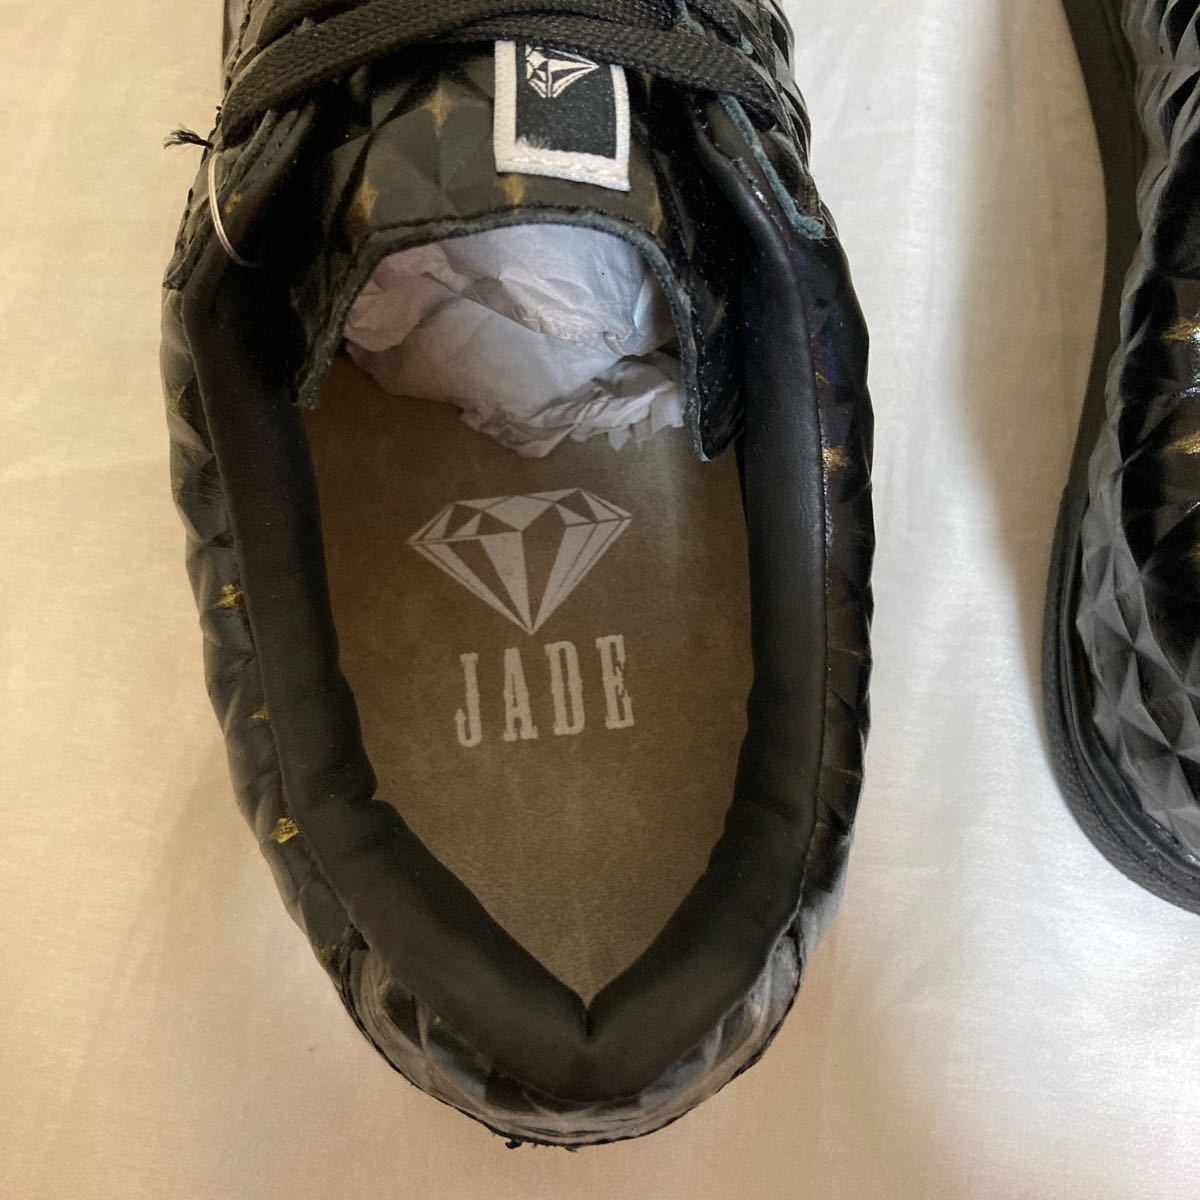 25.5cm 新品 JADE ジェイド JD7116 スニーカー ダンス シューズ メンズ 男性 ブランド 黒 靴 マドラス ダイヤ柄 型押し 牛革 GLANZ 革 25.5_画像6